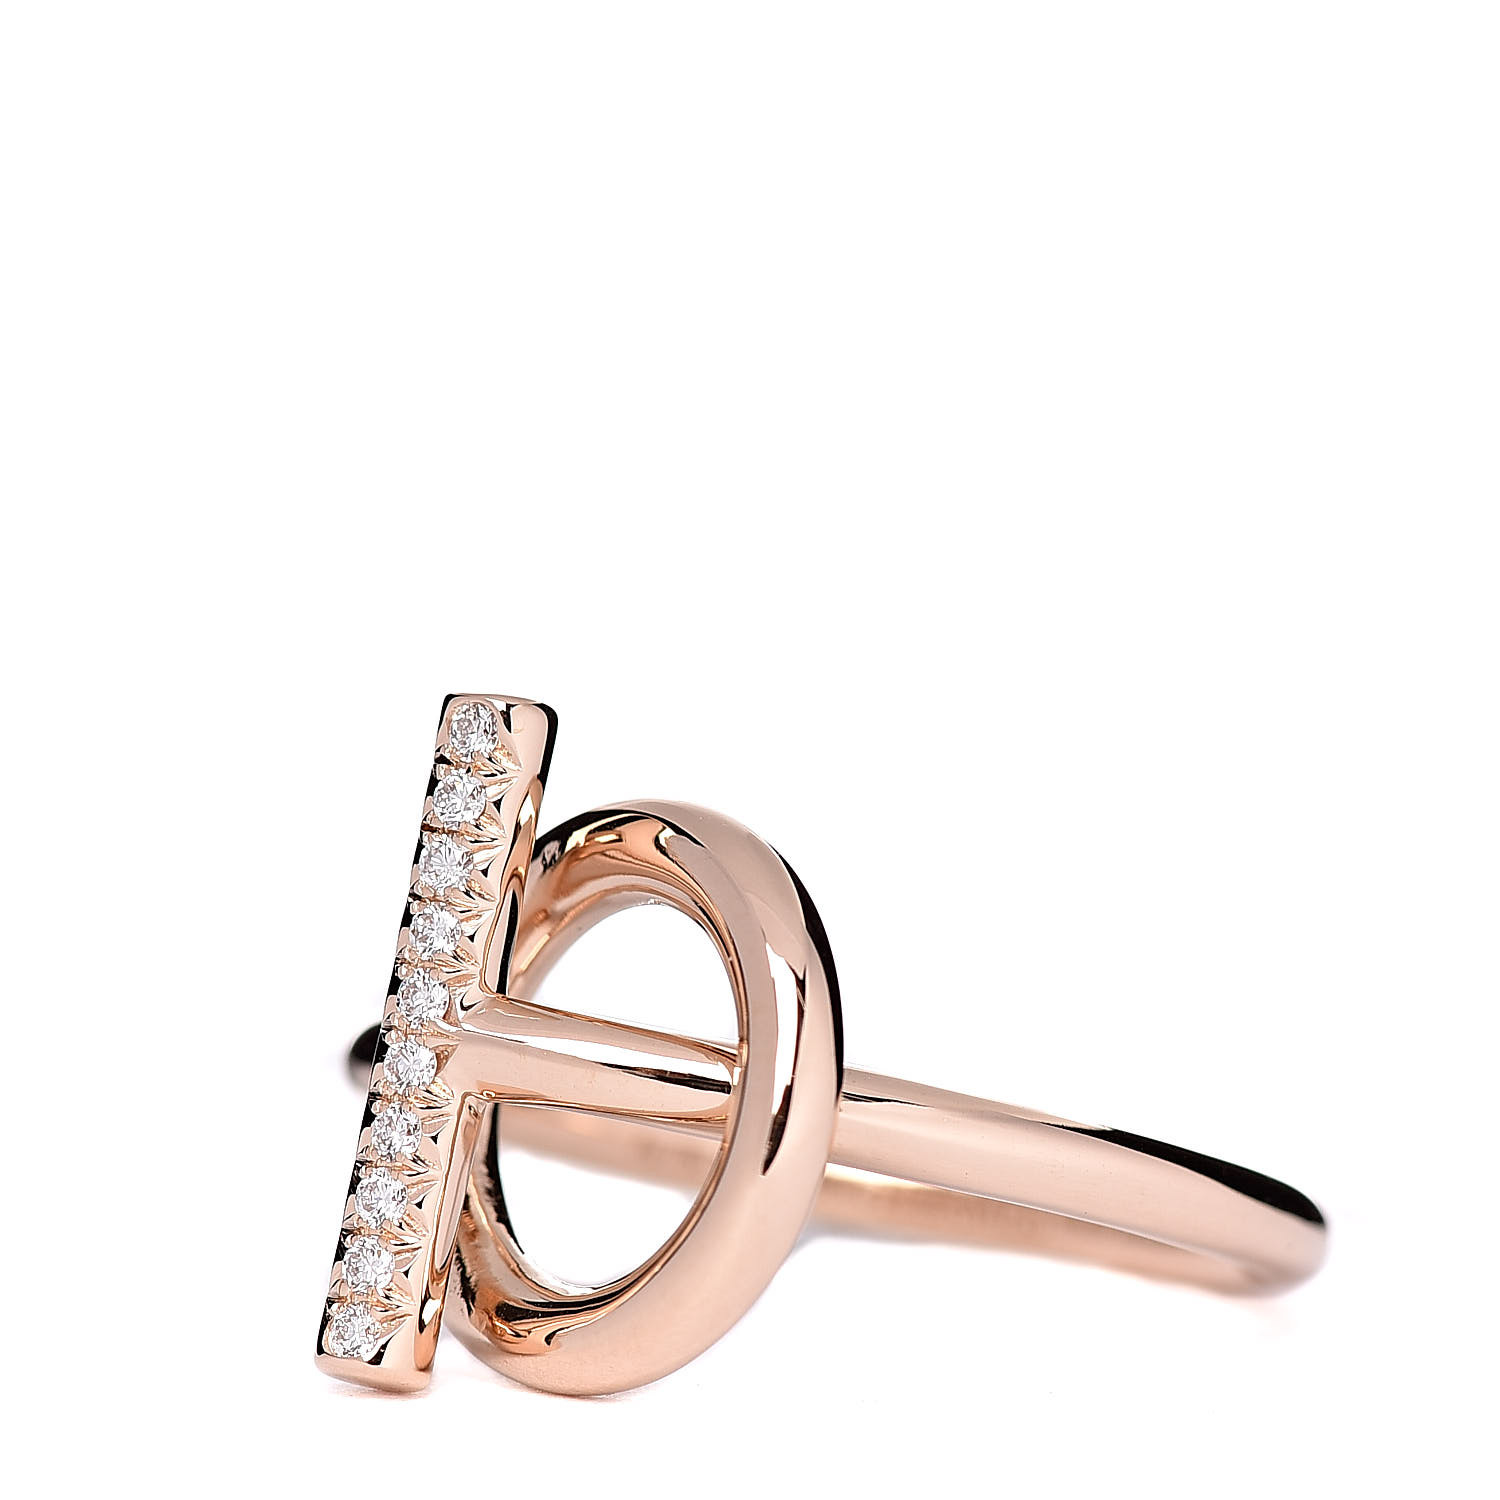 HERMES 18K Rose Gold Diamond PM Echappee Ring 52 6 499217